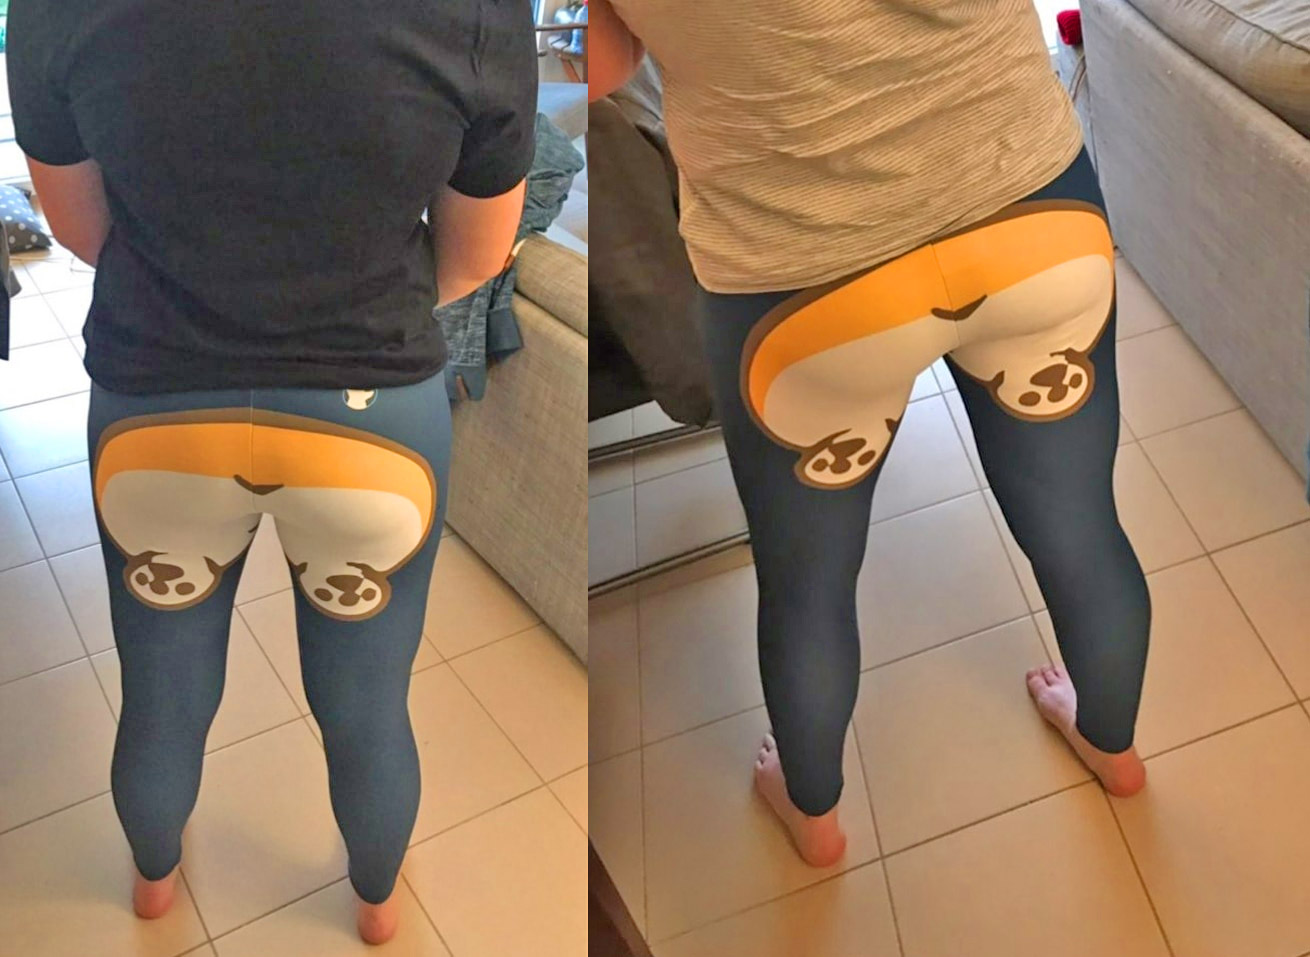 Corgi Butt Leggings - Corgi butt yoga pants turn your booty into a corgi butt